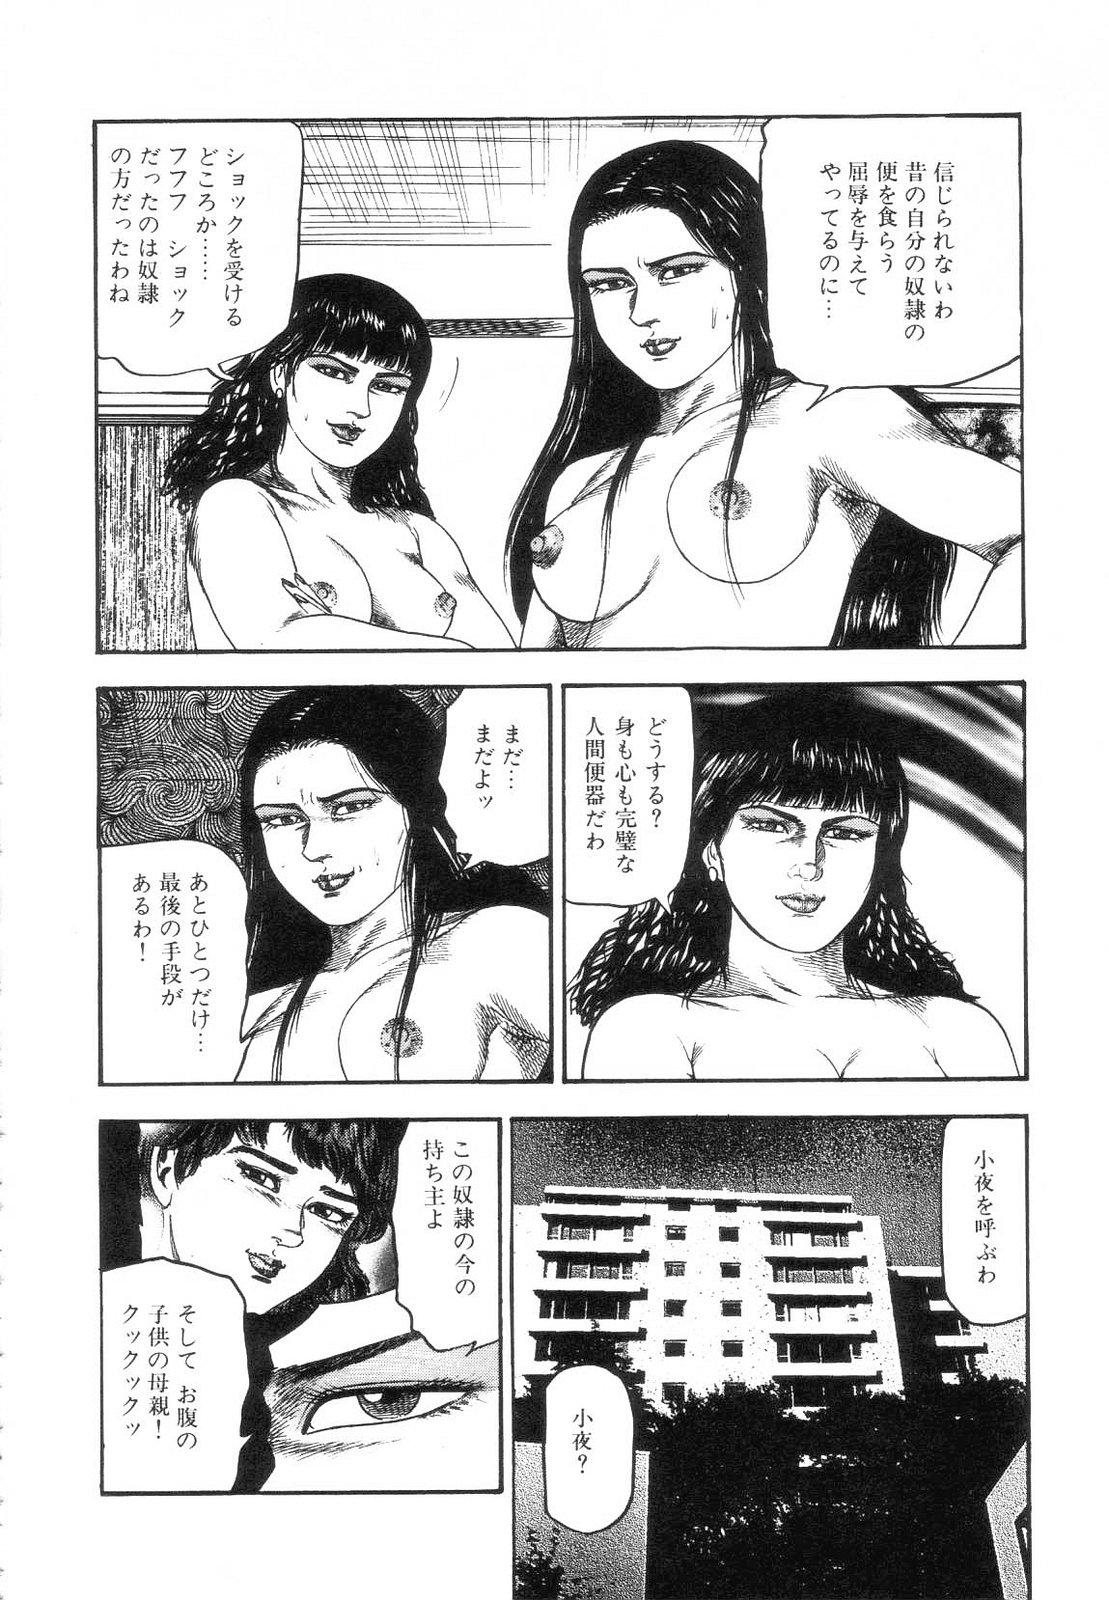 Shiro no Mokushiroku Vol. 7 - Shiiku Ningyou Erika no Shou 107